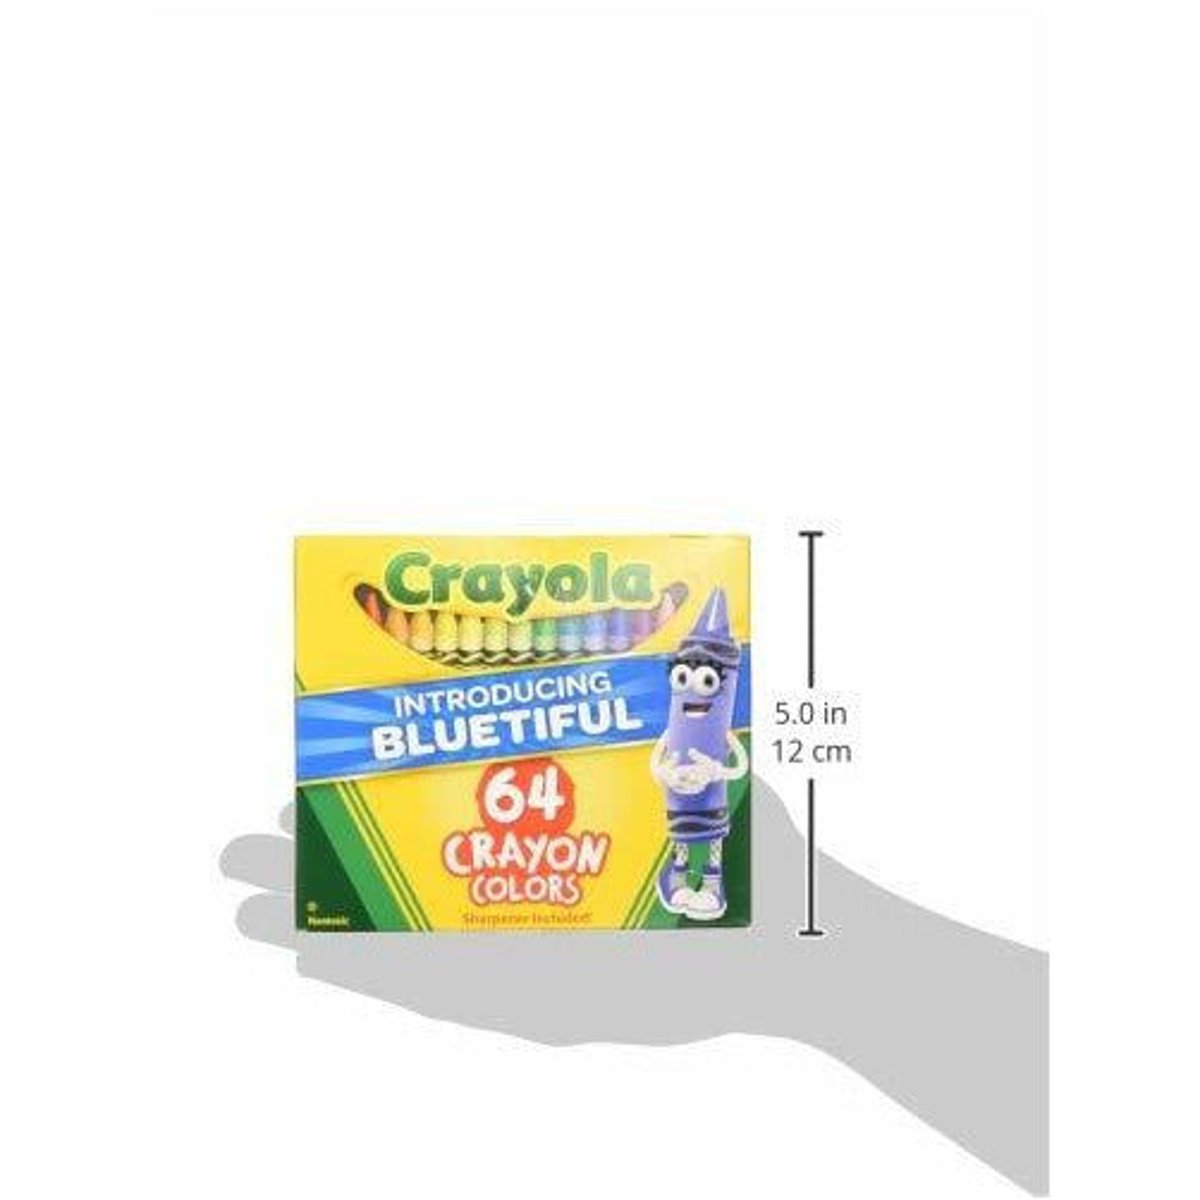 Crayola, ¿cuál es su nombre real, origen y qué tipos existen